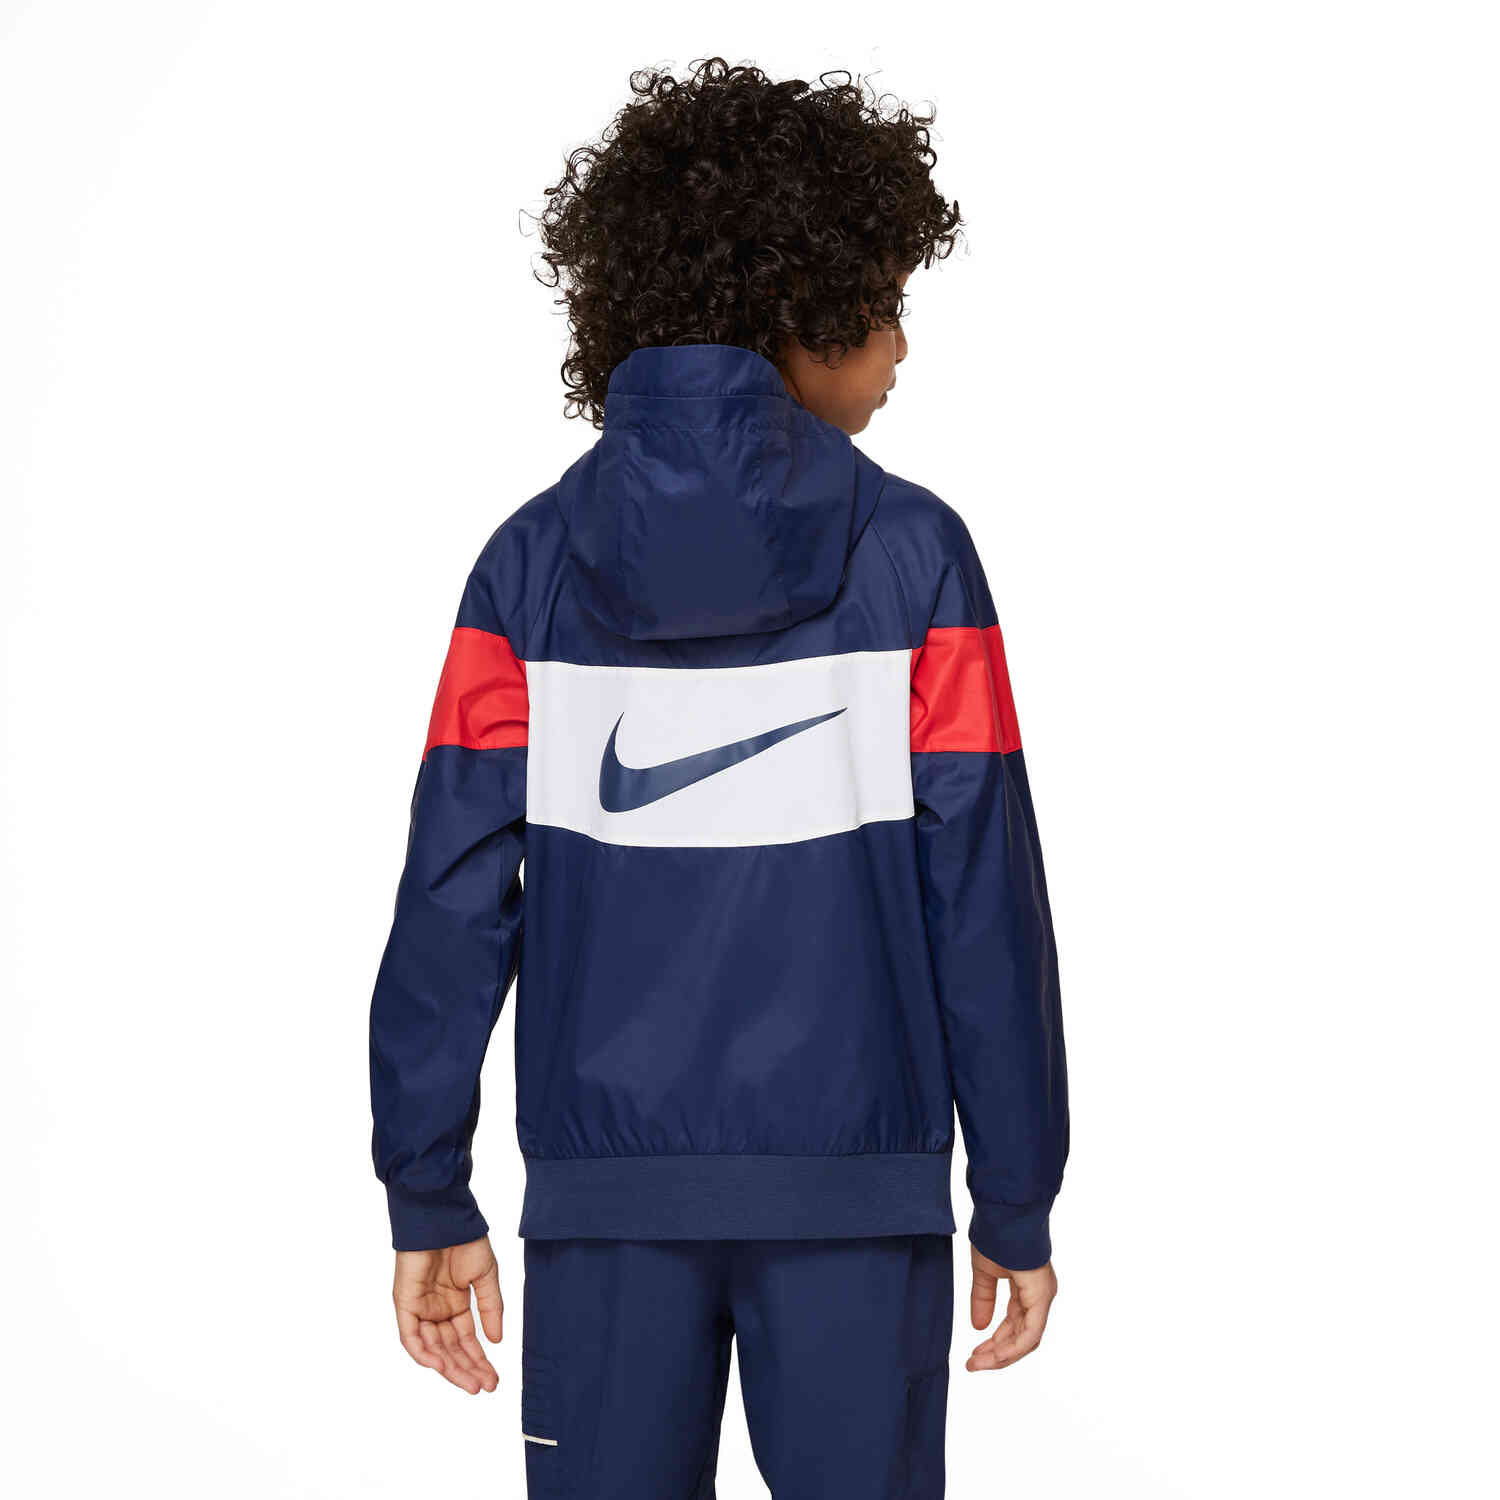 Jacket SoccerPro Midnight Nike Kids Navy/White/University Anthem Red/White PSG - -